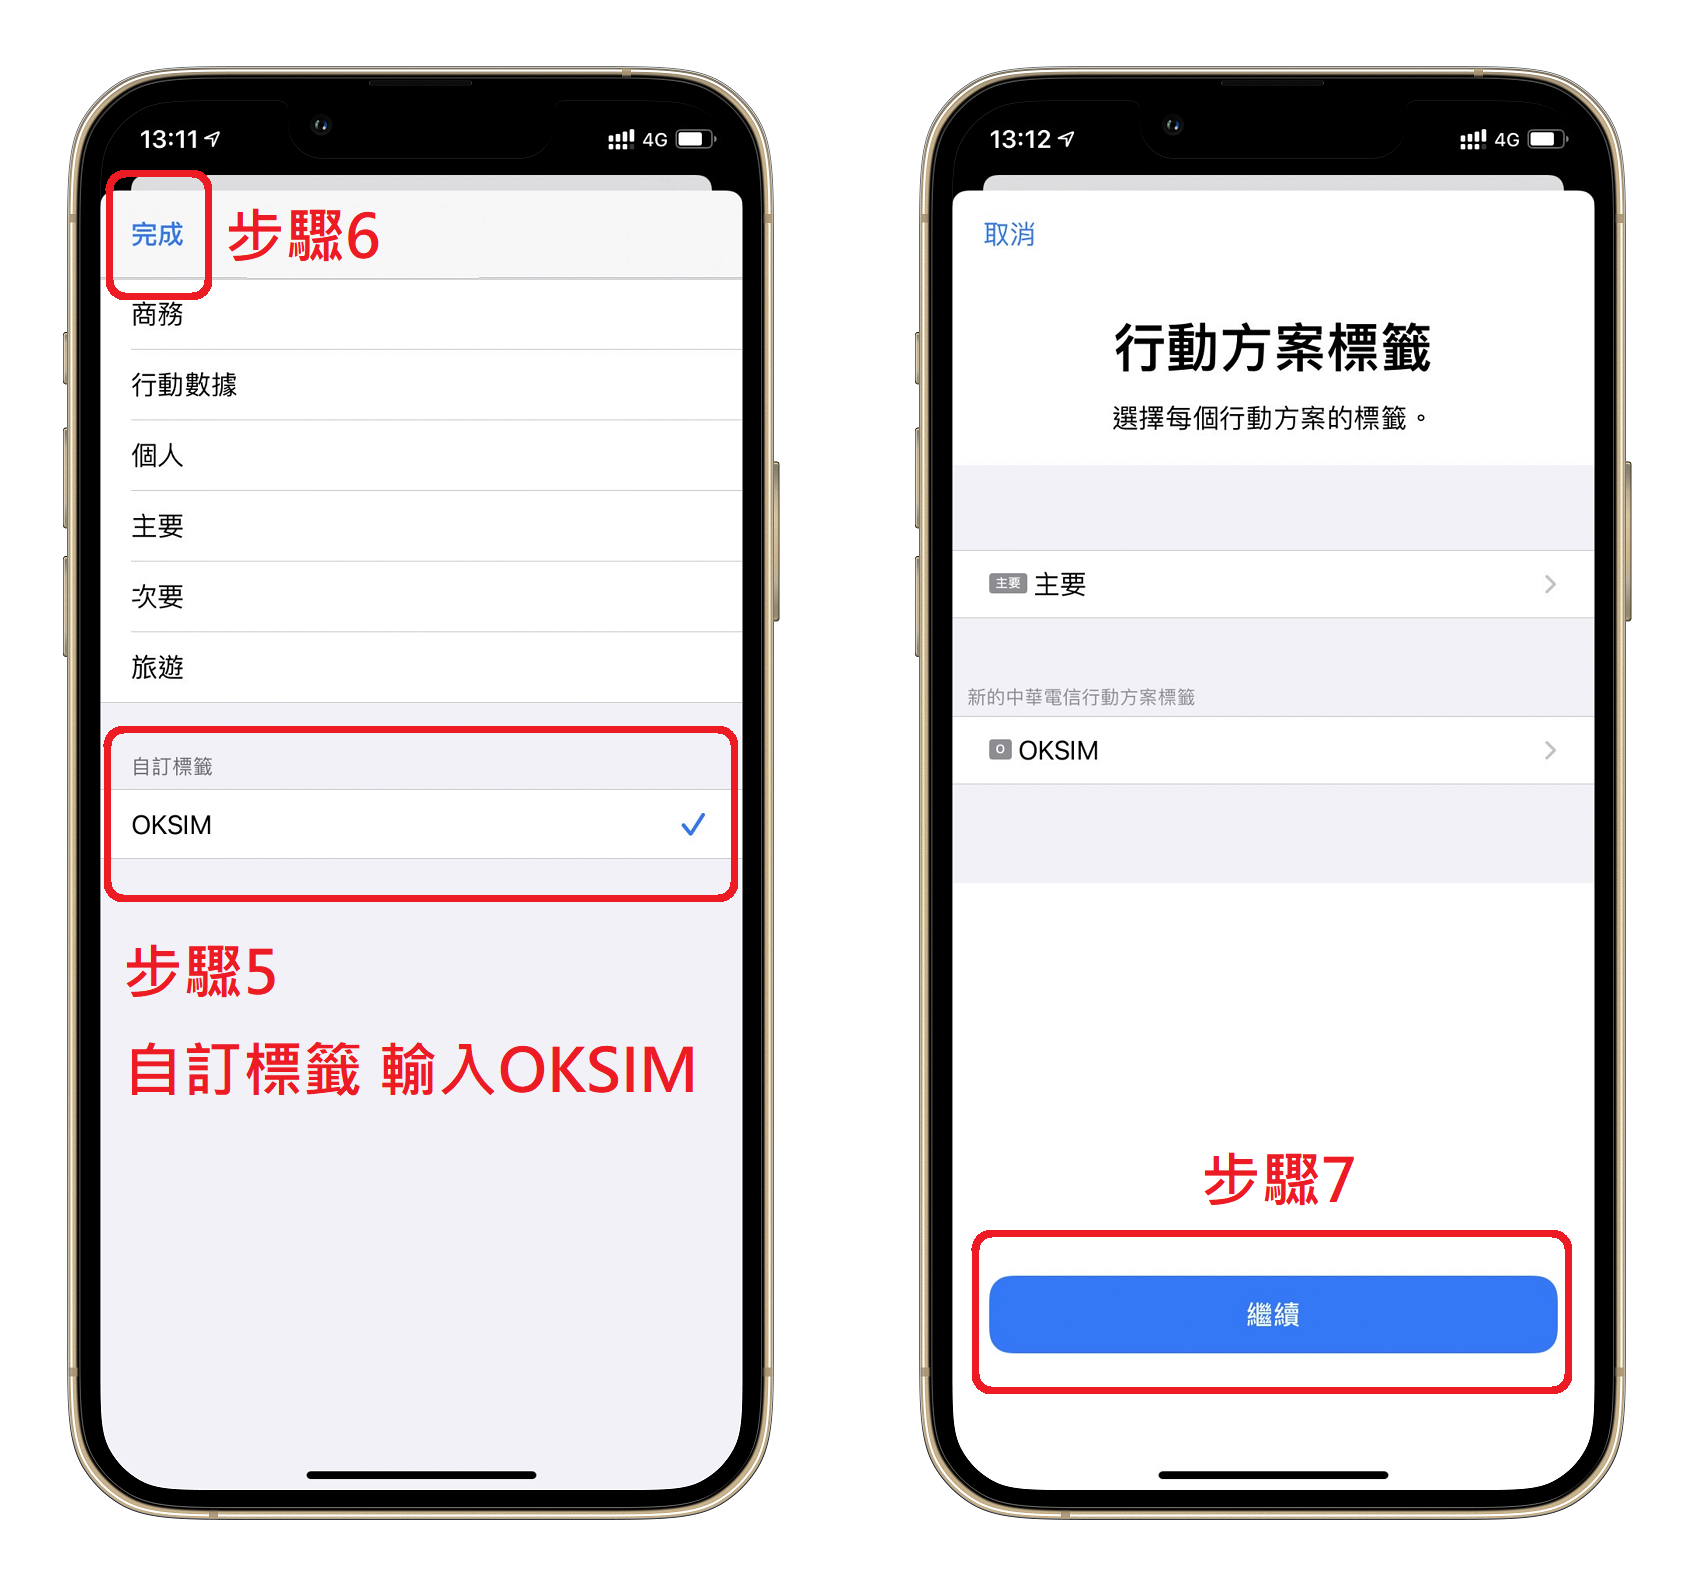 掃描QR CODE之後，您需要為您這張中港澳的eSIM設定標籤，這個設定主要是讓您自己能夠辨識哪一個行動方案為台灣的，而哪一個是新增的中國eSIM。您可以簡單選擇商務、旅遊等，或者我們建議您可以自訂標籤，輸入OKSIM，這樣更能提高此方案的識別度。設定好eSIM標籤之後就可以進入下一個步驟。